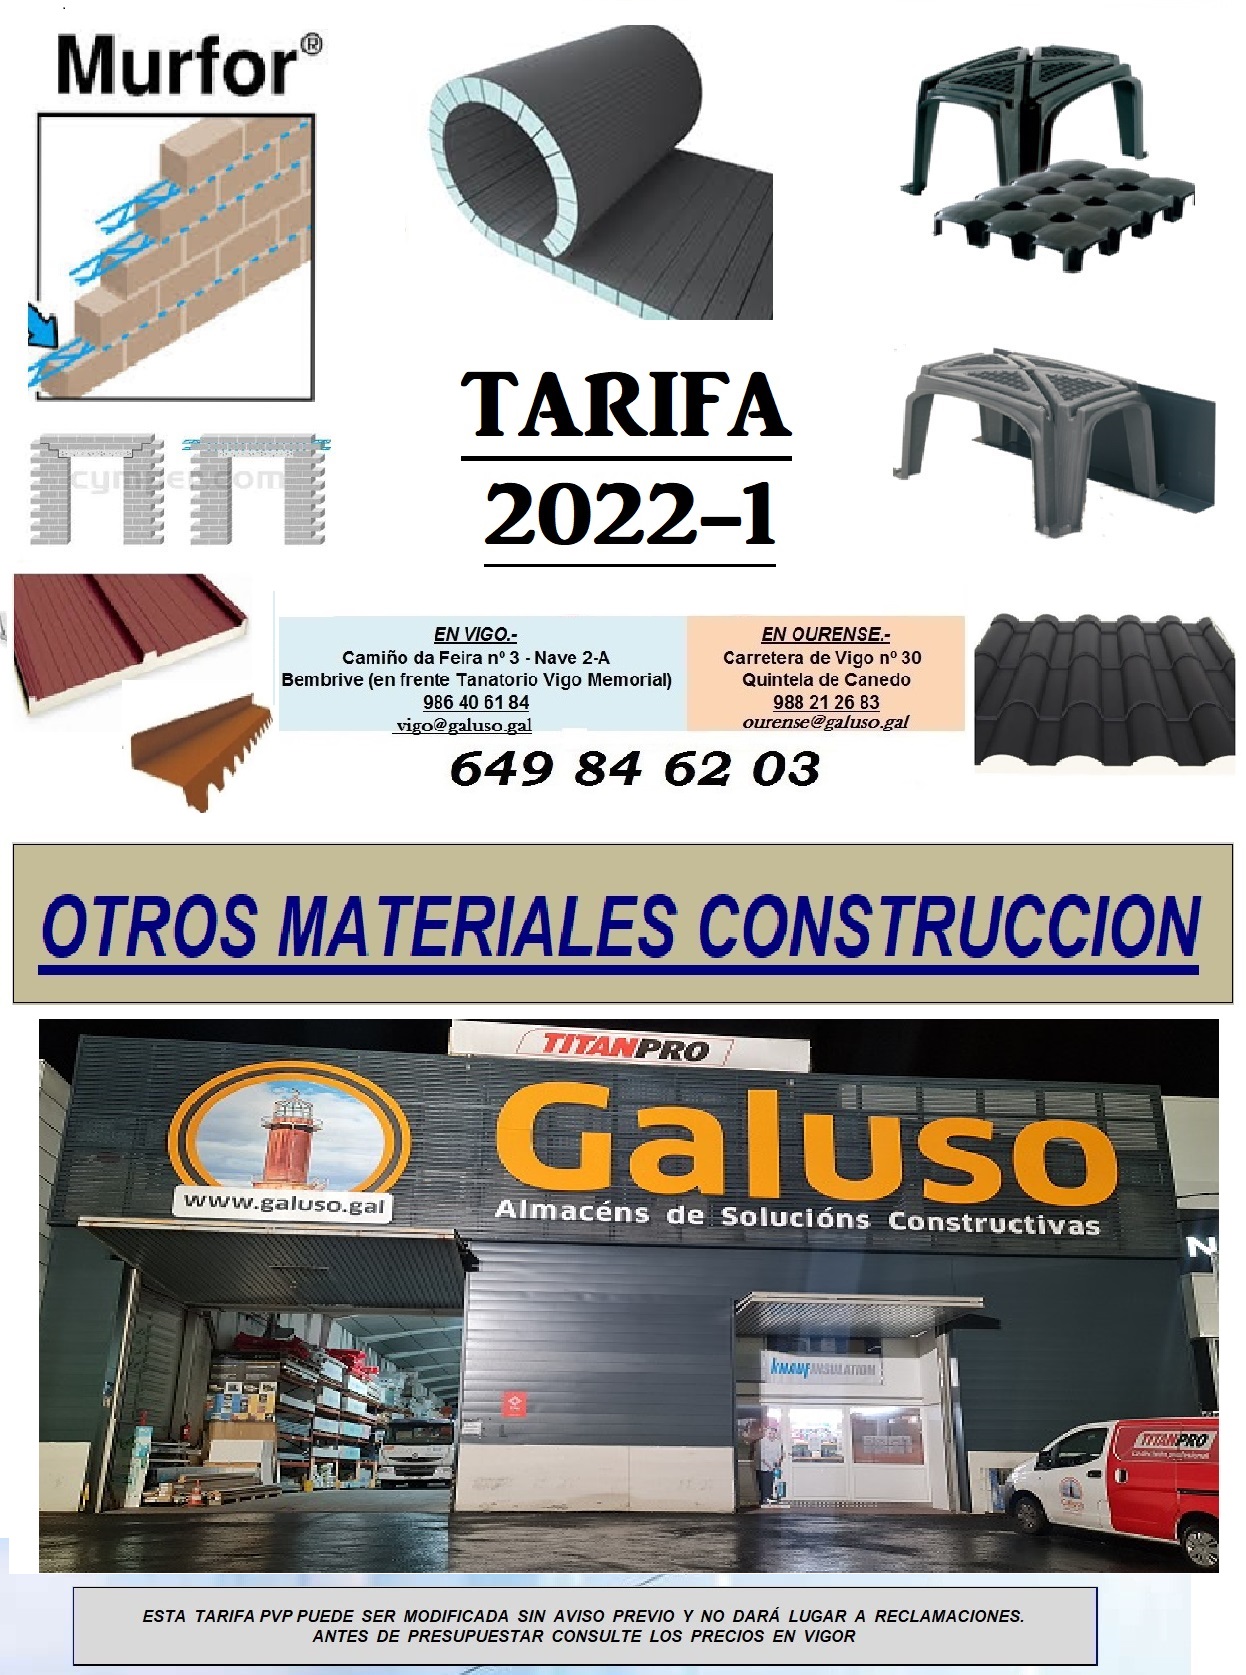 TARIFA OTROS MATERIALES DE CONSTRUCCION 2022-1 }}